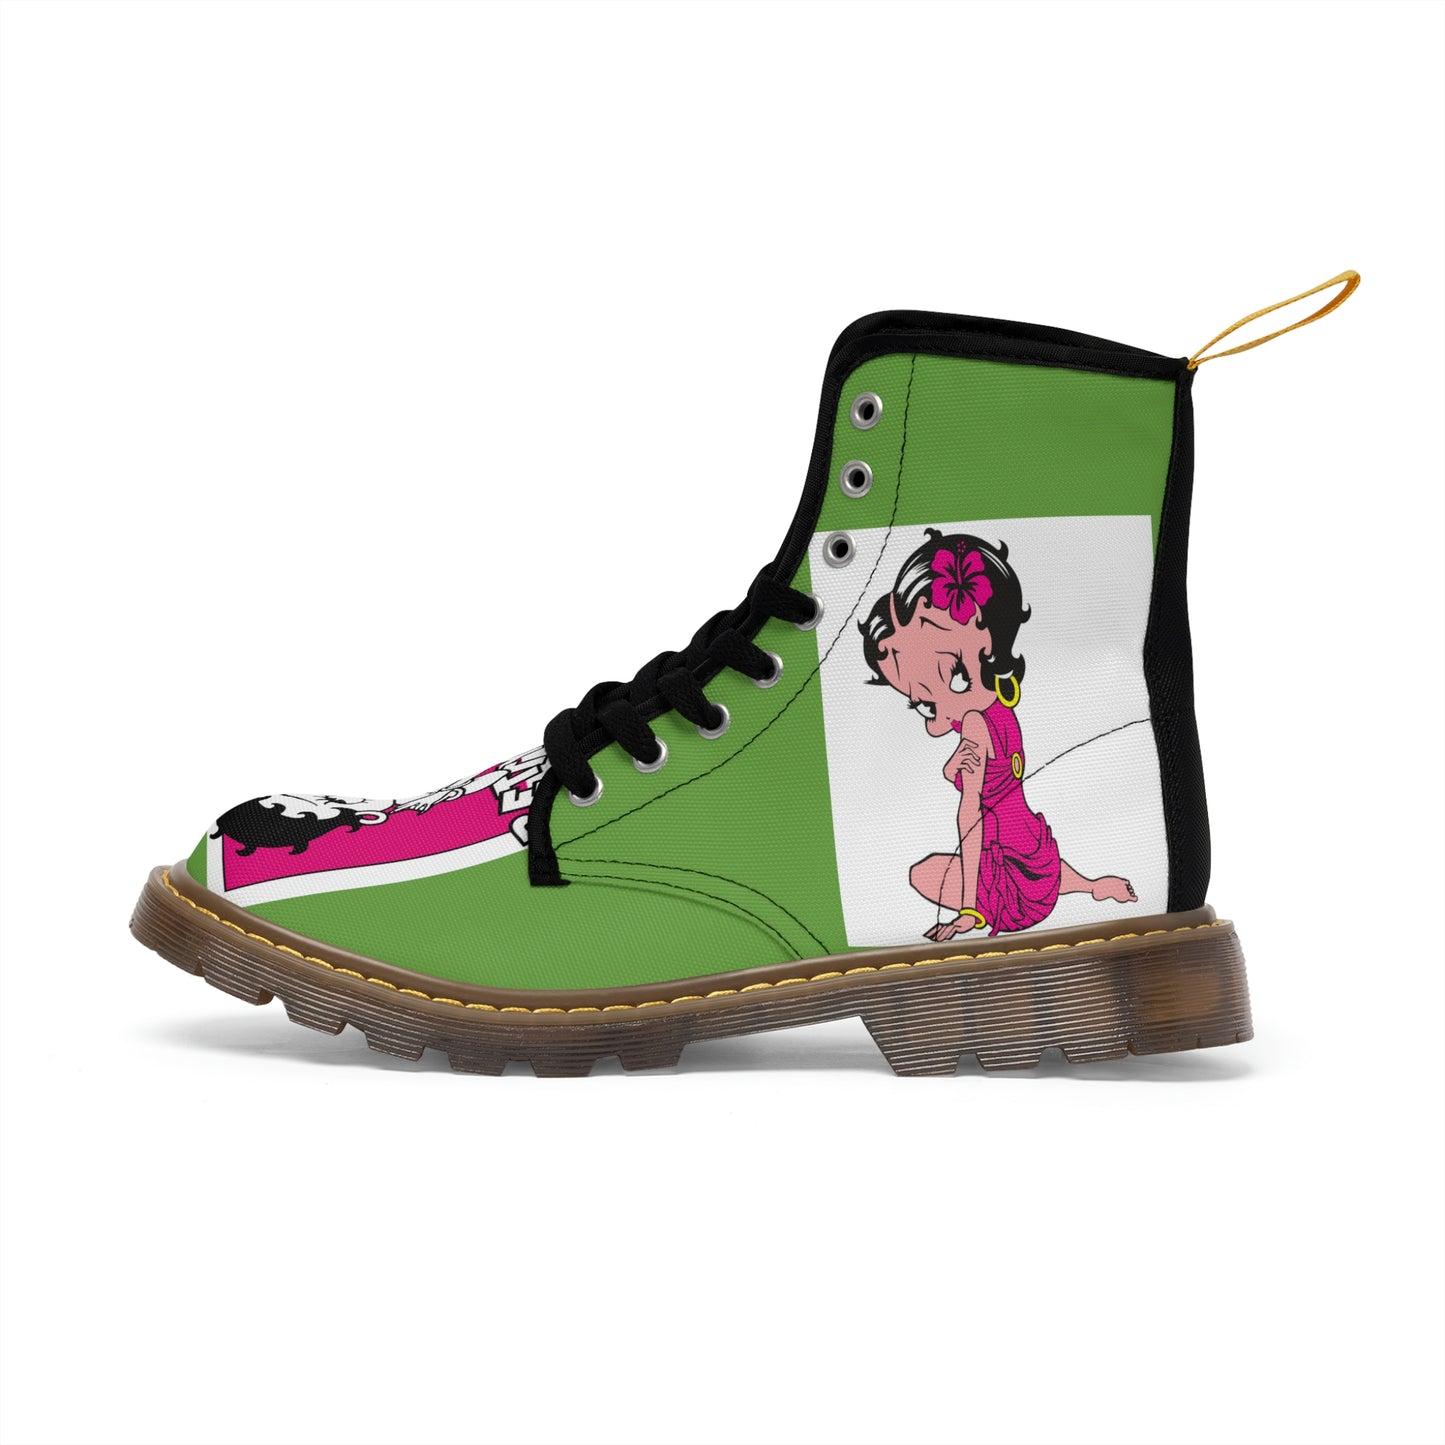 Green Women's Canvas Boots